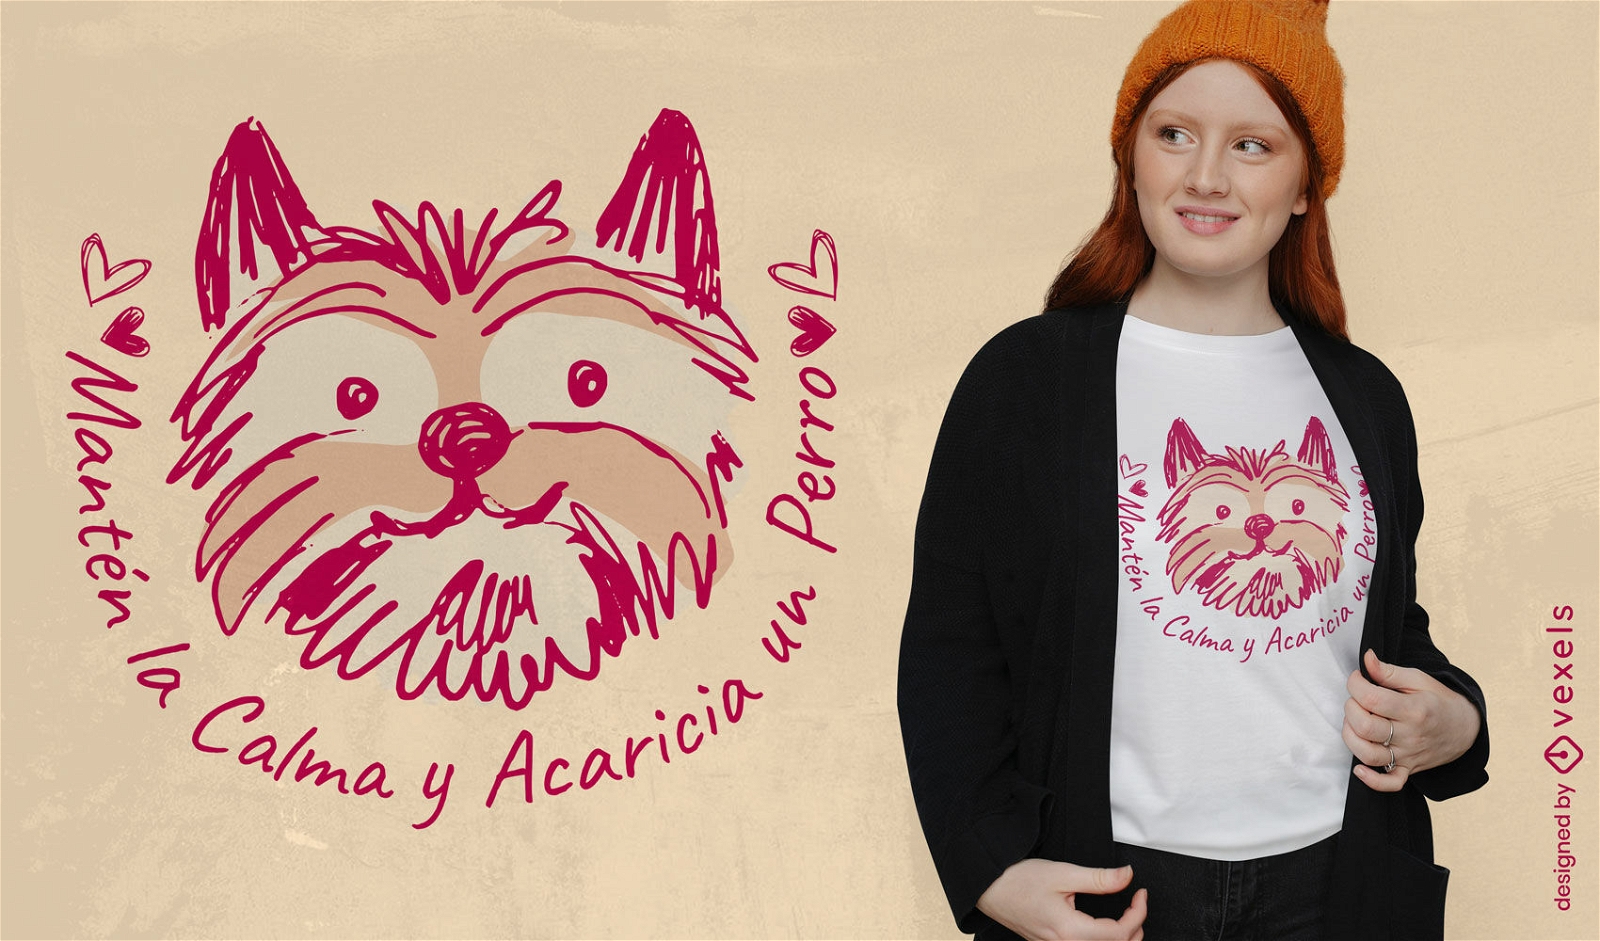 Pet a dog spanish t-shirt design